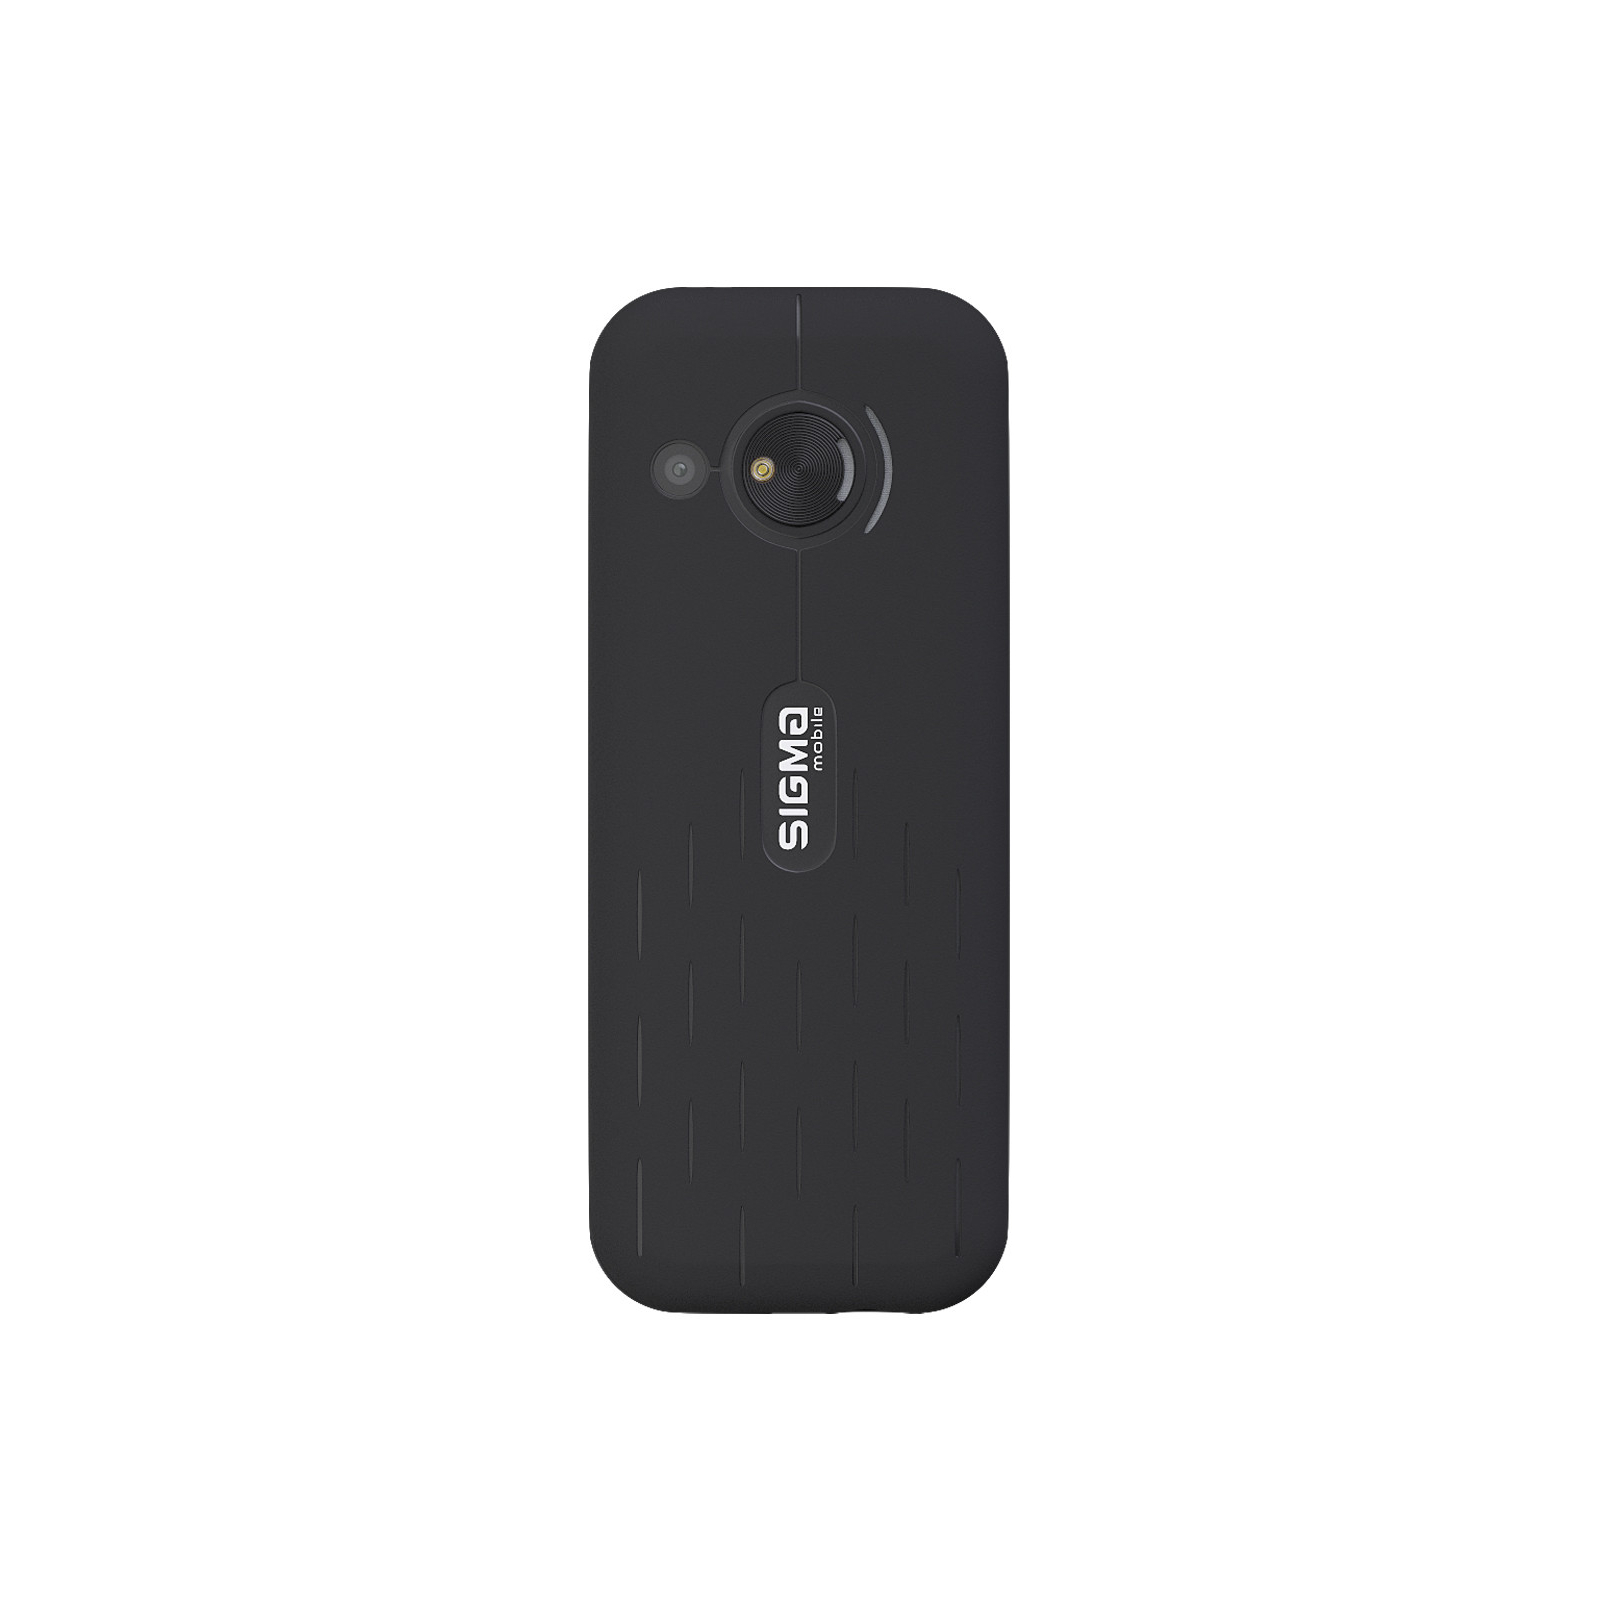 Мобильный телефон Sigma X-style S3500 sKai Black (4827798121610) изображение 2